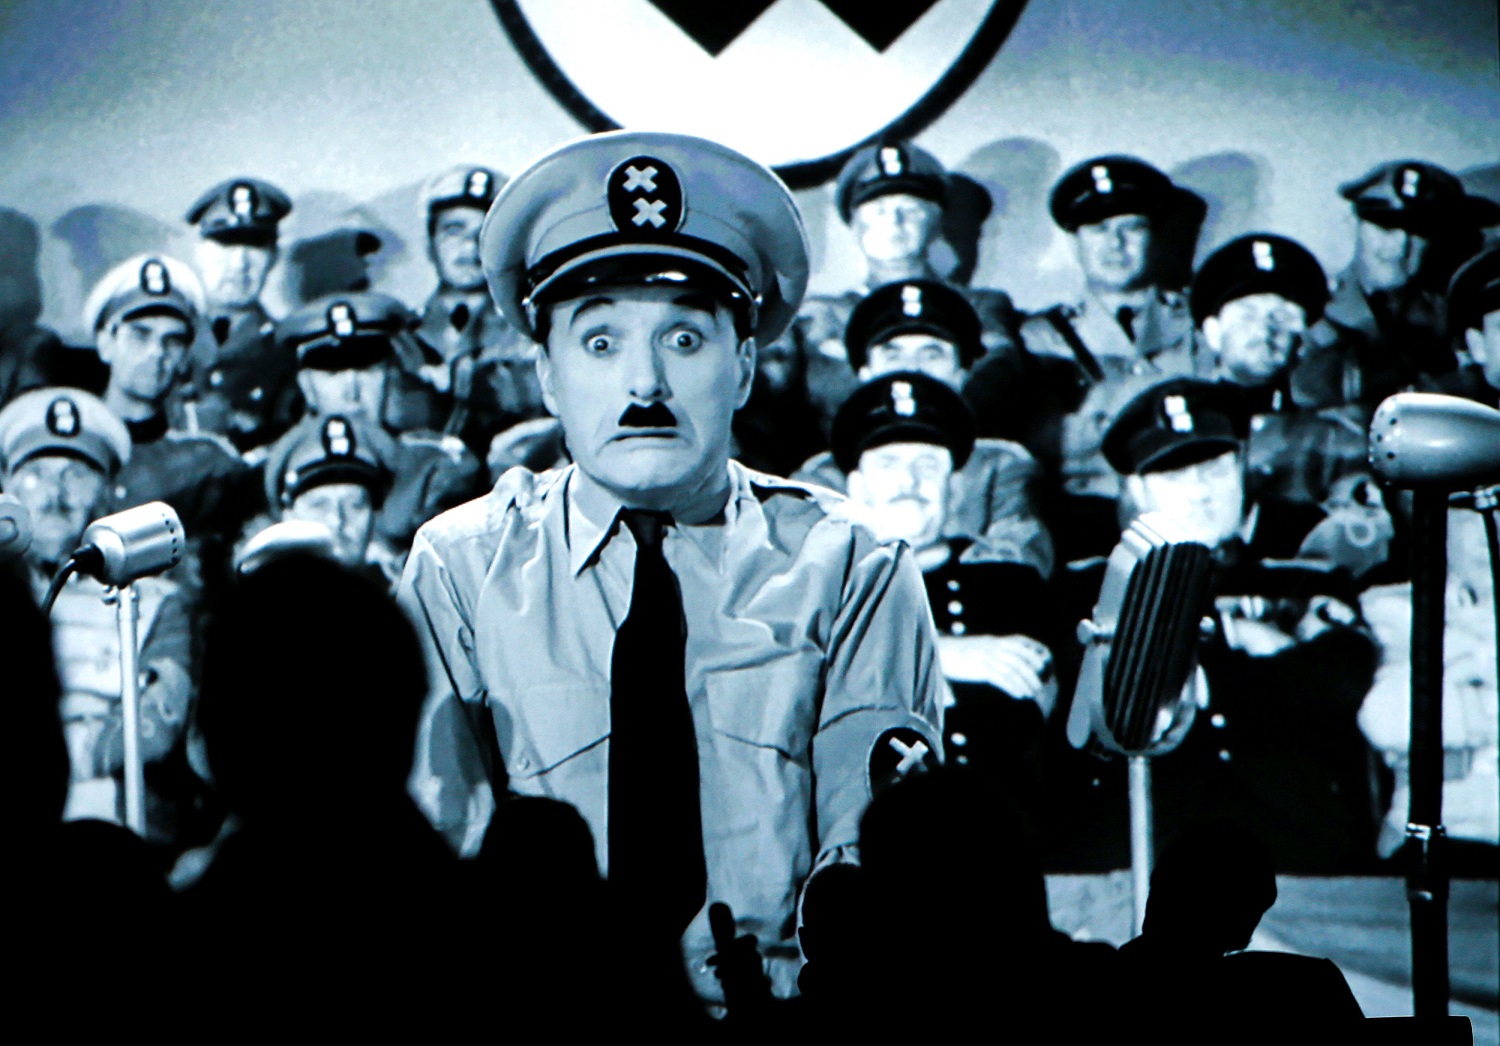 Películas restauradas de Chaplin se estrenarán en cines de todo el mundo